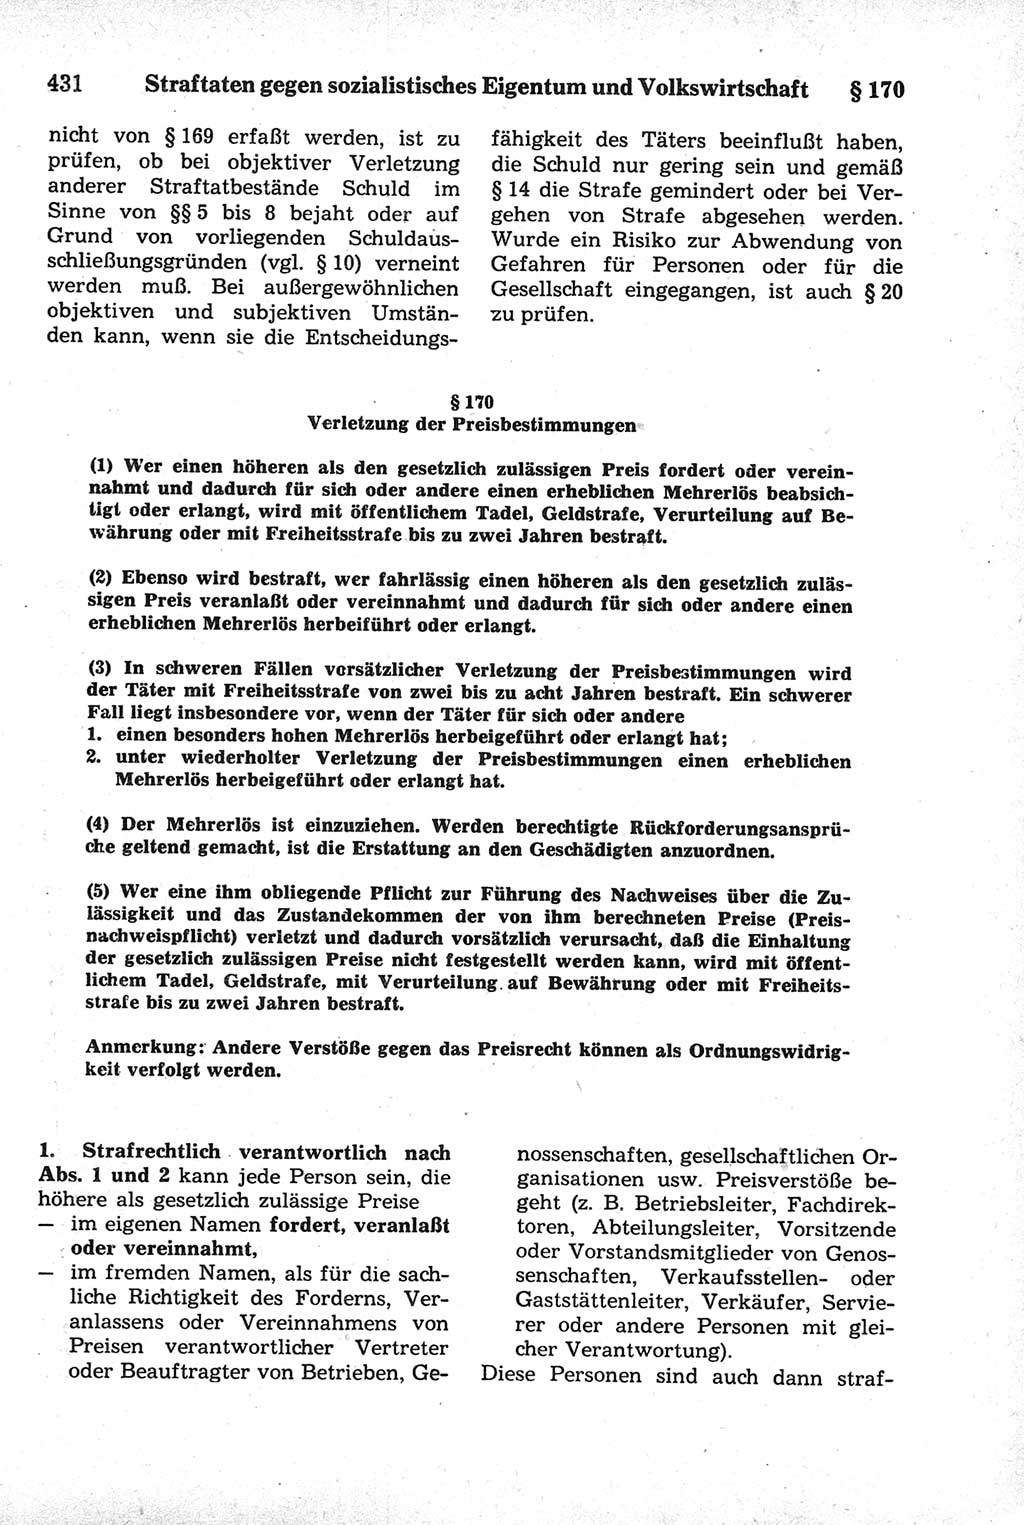 Strafrecht der Deutschen Demokratischen Republik (DDR), Kommentar zum Strafgesetzbuch (StGB) 1981, Seite 431 (Strafr. DDR Komm. StGB 1981, S. 431)